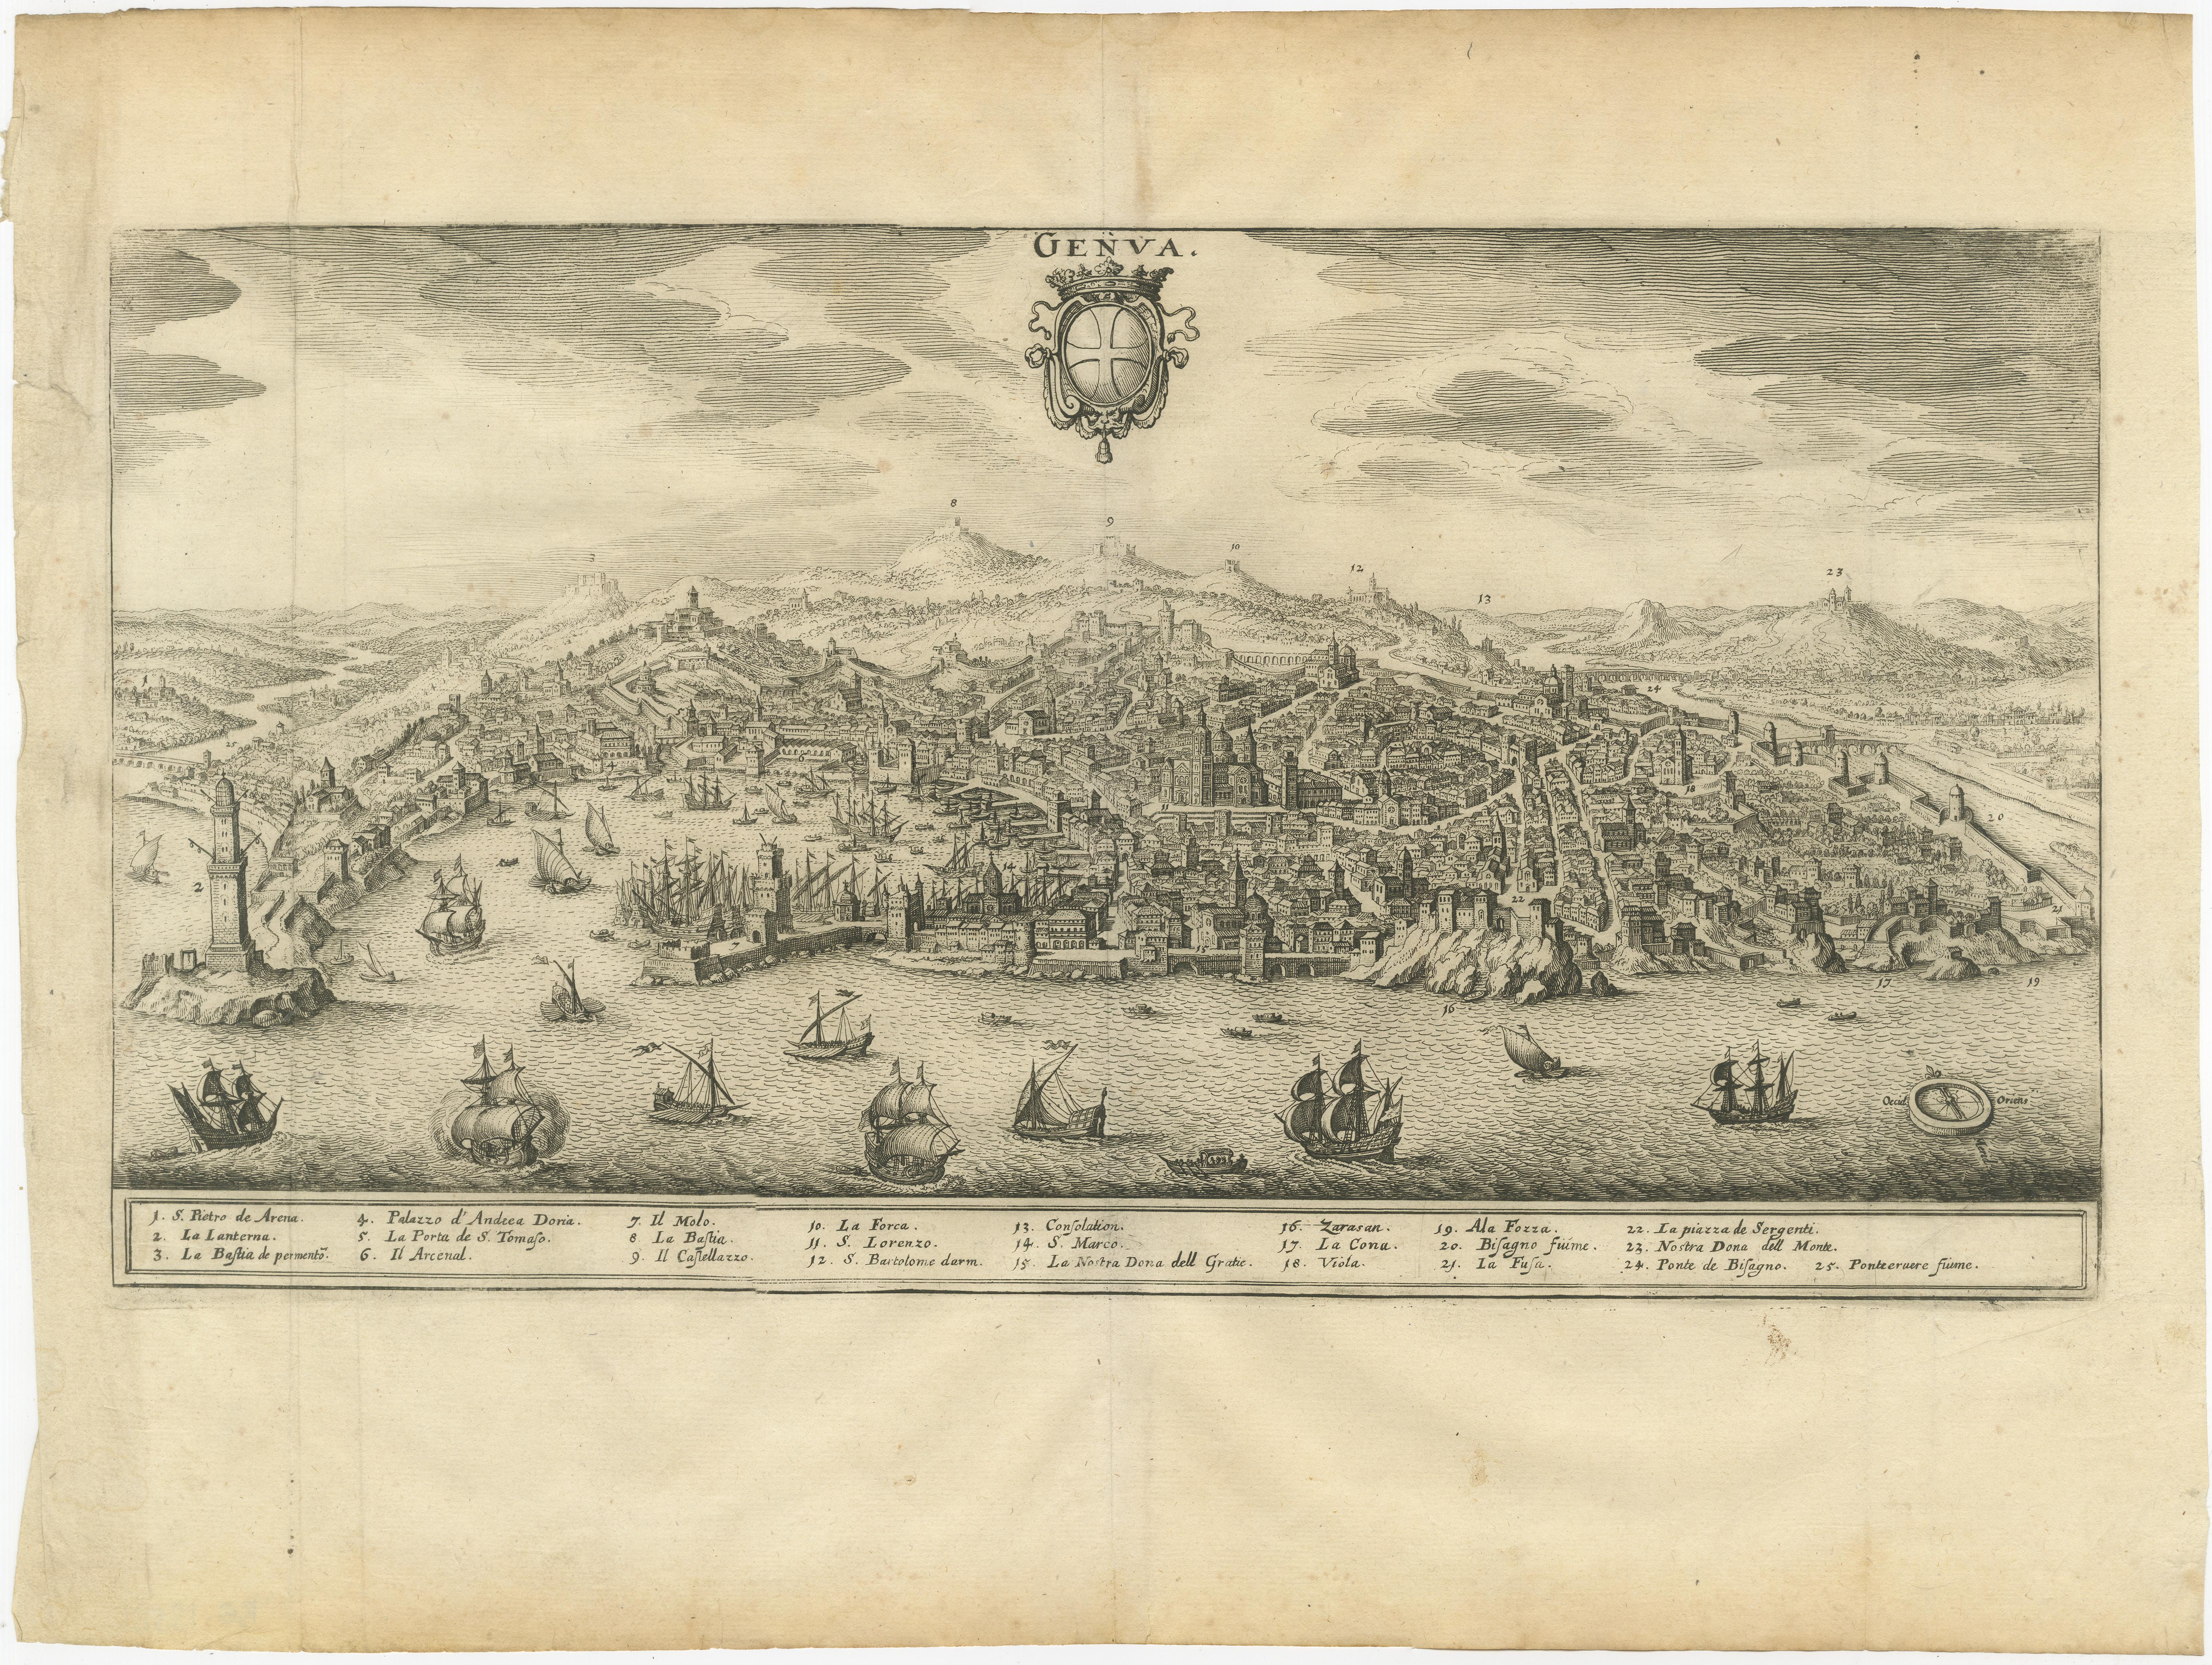 Antiker Druck mit dem Titel 'Genua'. Blick aus der Vogelperspektive auf die Stadt Genua, Italien. Herausgegeben von Matthäus Merian dem Älteren, um 1650. 

Matthäus Merian sr. (der Ältere; 1593-1630) wurde in der Schweiz geboren, ließ sich aber